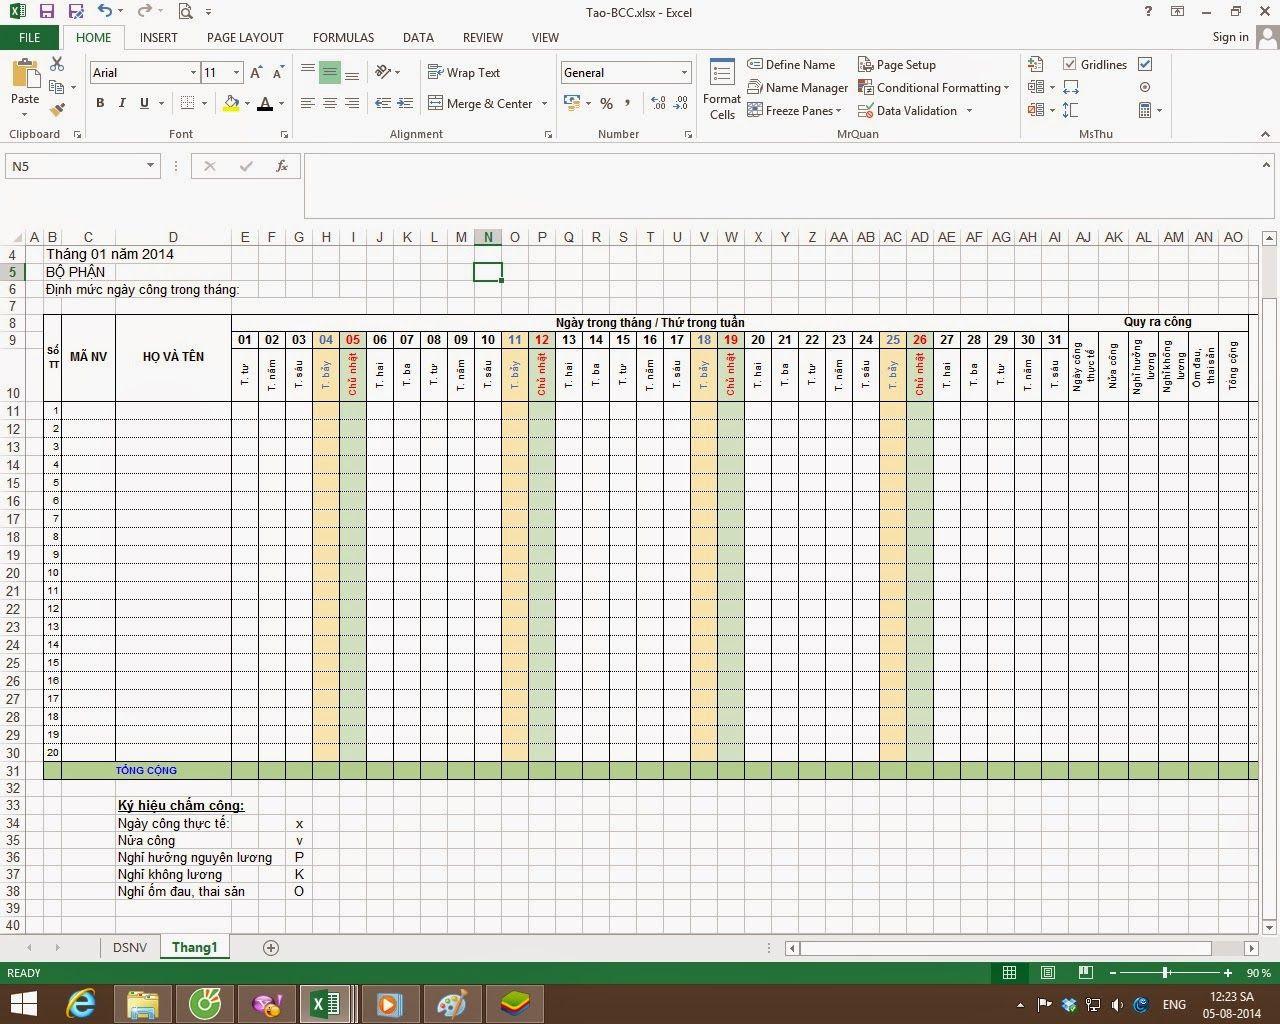 Cách tính bảng chấm công trong excel được thực hiện như thế nào? Hướng dẫn cách tạo bảng chấm công trên Excel chi tiết nhất 47